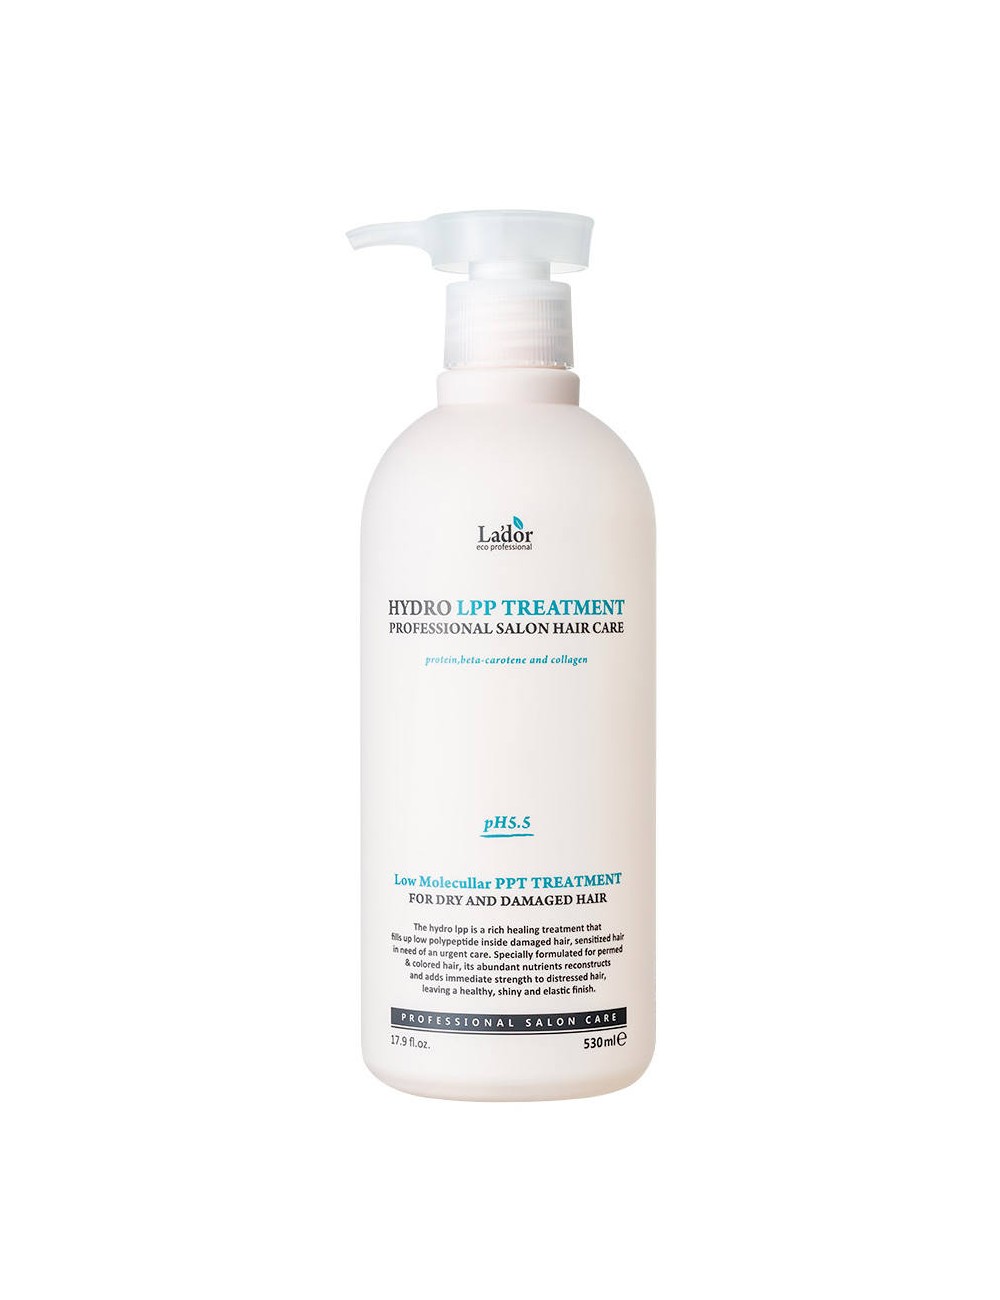 Cabello al mejor precio: Tratamiento para Cabello Dañado La'dor Hydro LPP Treatment 530ml de Lador Eco Professional en Skin Thinks - 